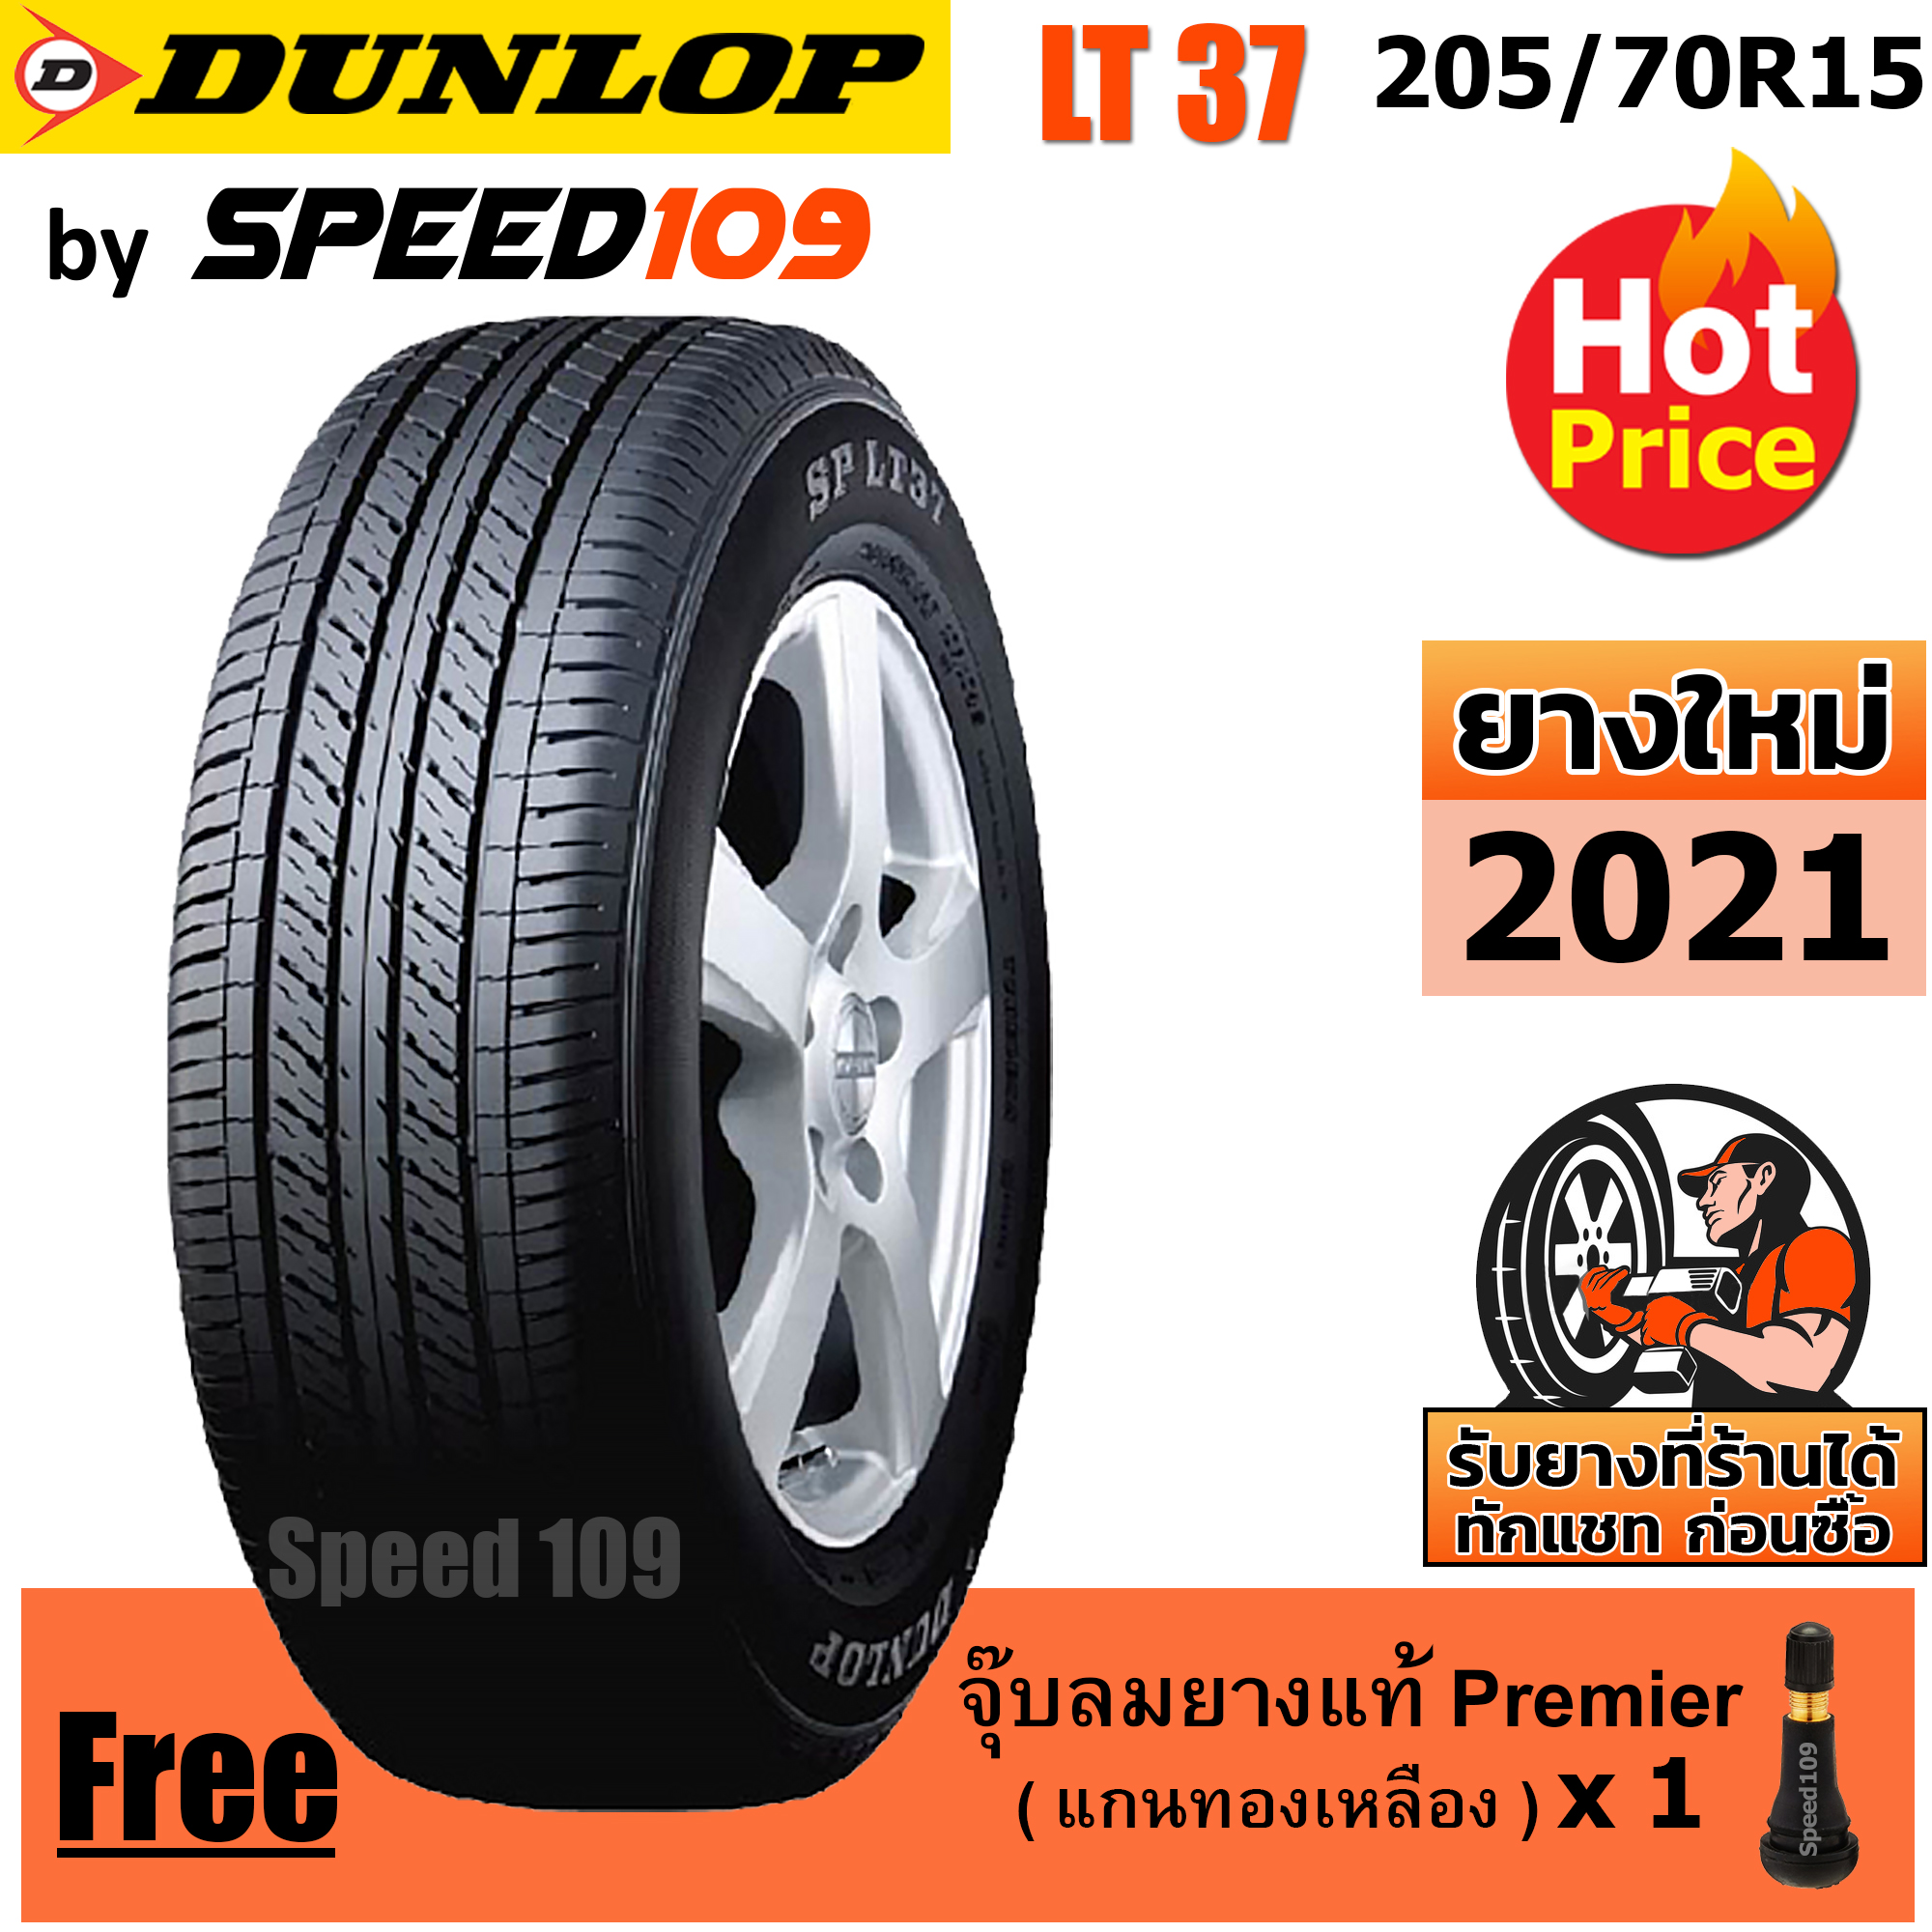 DUNLOP ยางรถยนต์ ขอบ 15 ขนาด 205/70R15 รุ่น SP LT37 - 1 เส้น (ปี 2021)